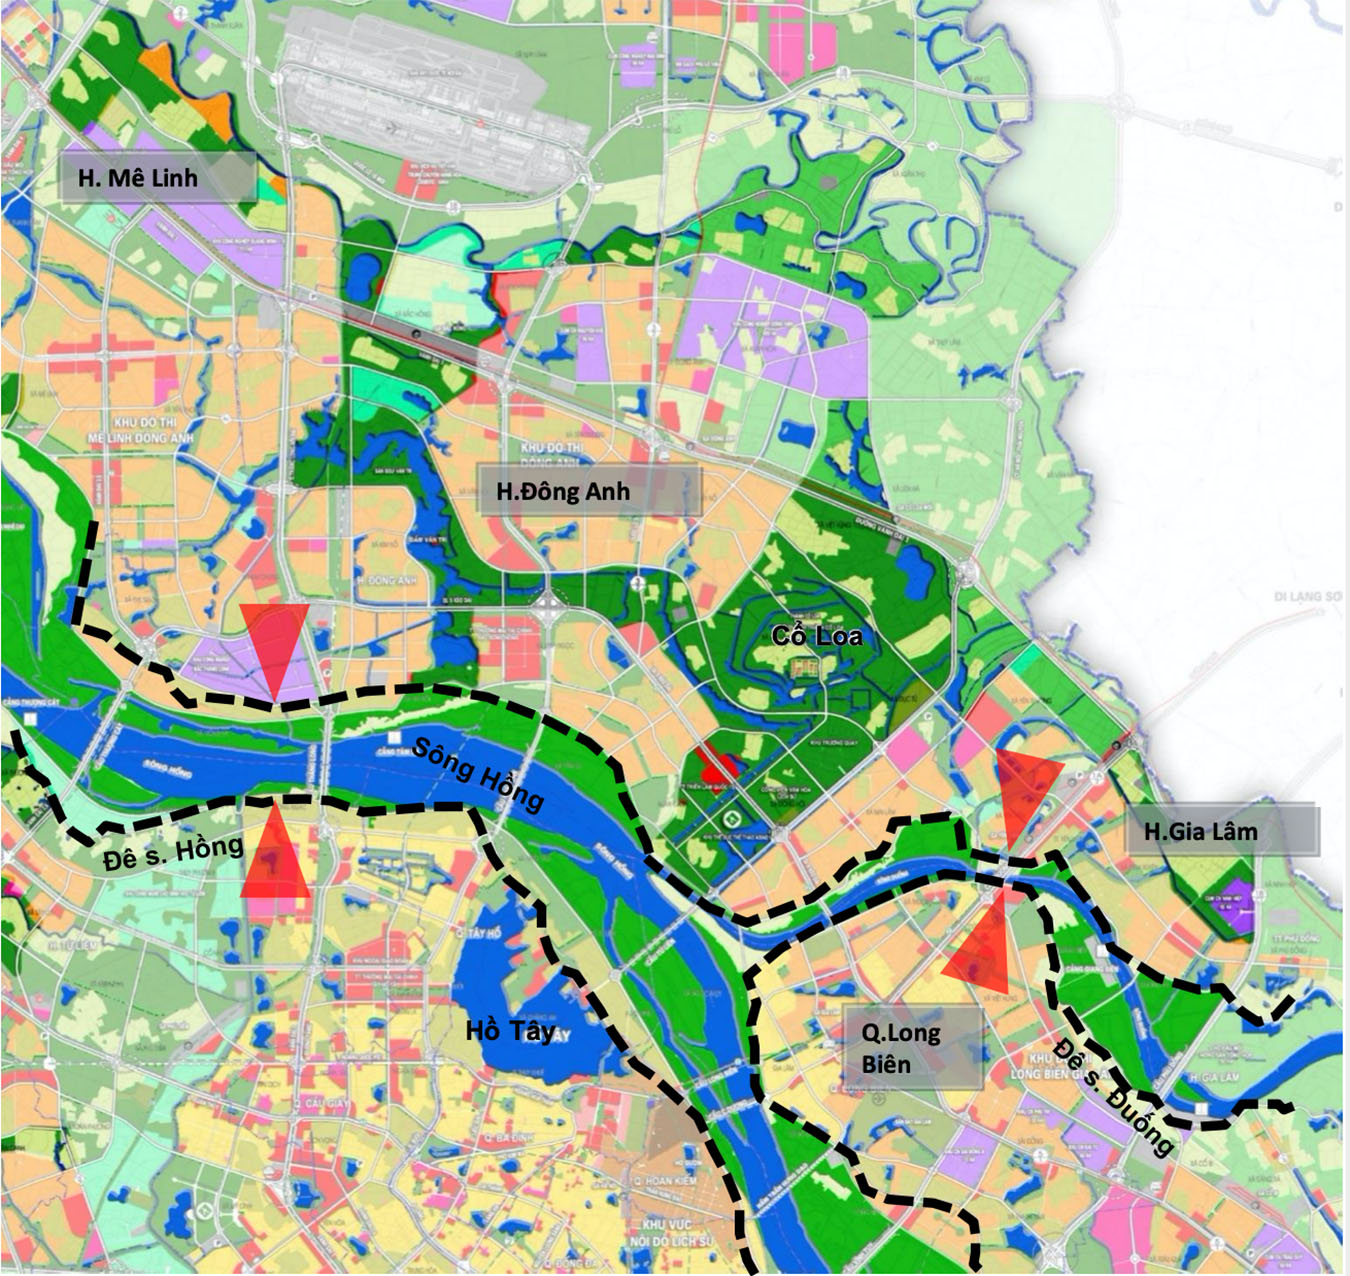 Phân khu đô thị sông Đuống được định hướng quy hoạch bổ trợ cho cảnh quan trung tâm của phía Bắc sông Hồng